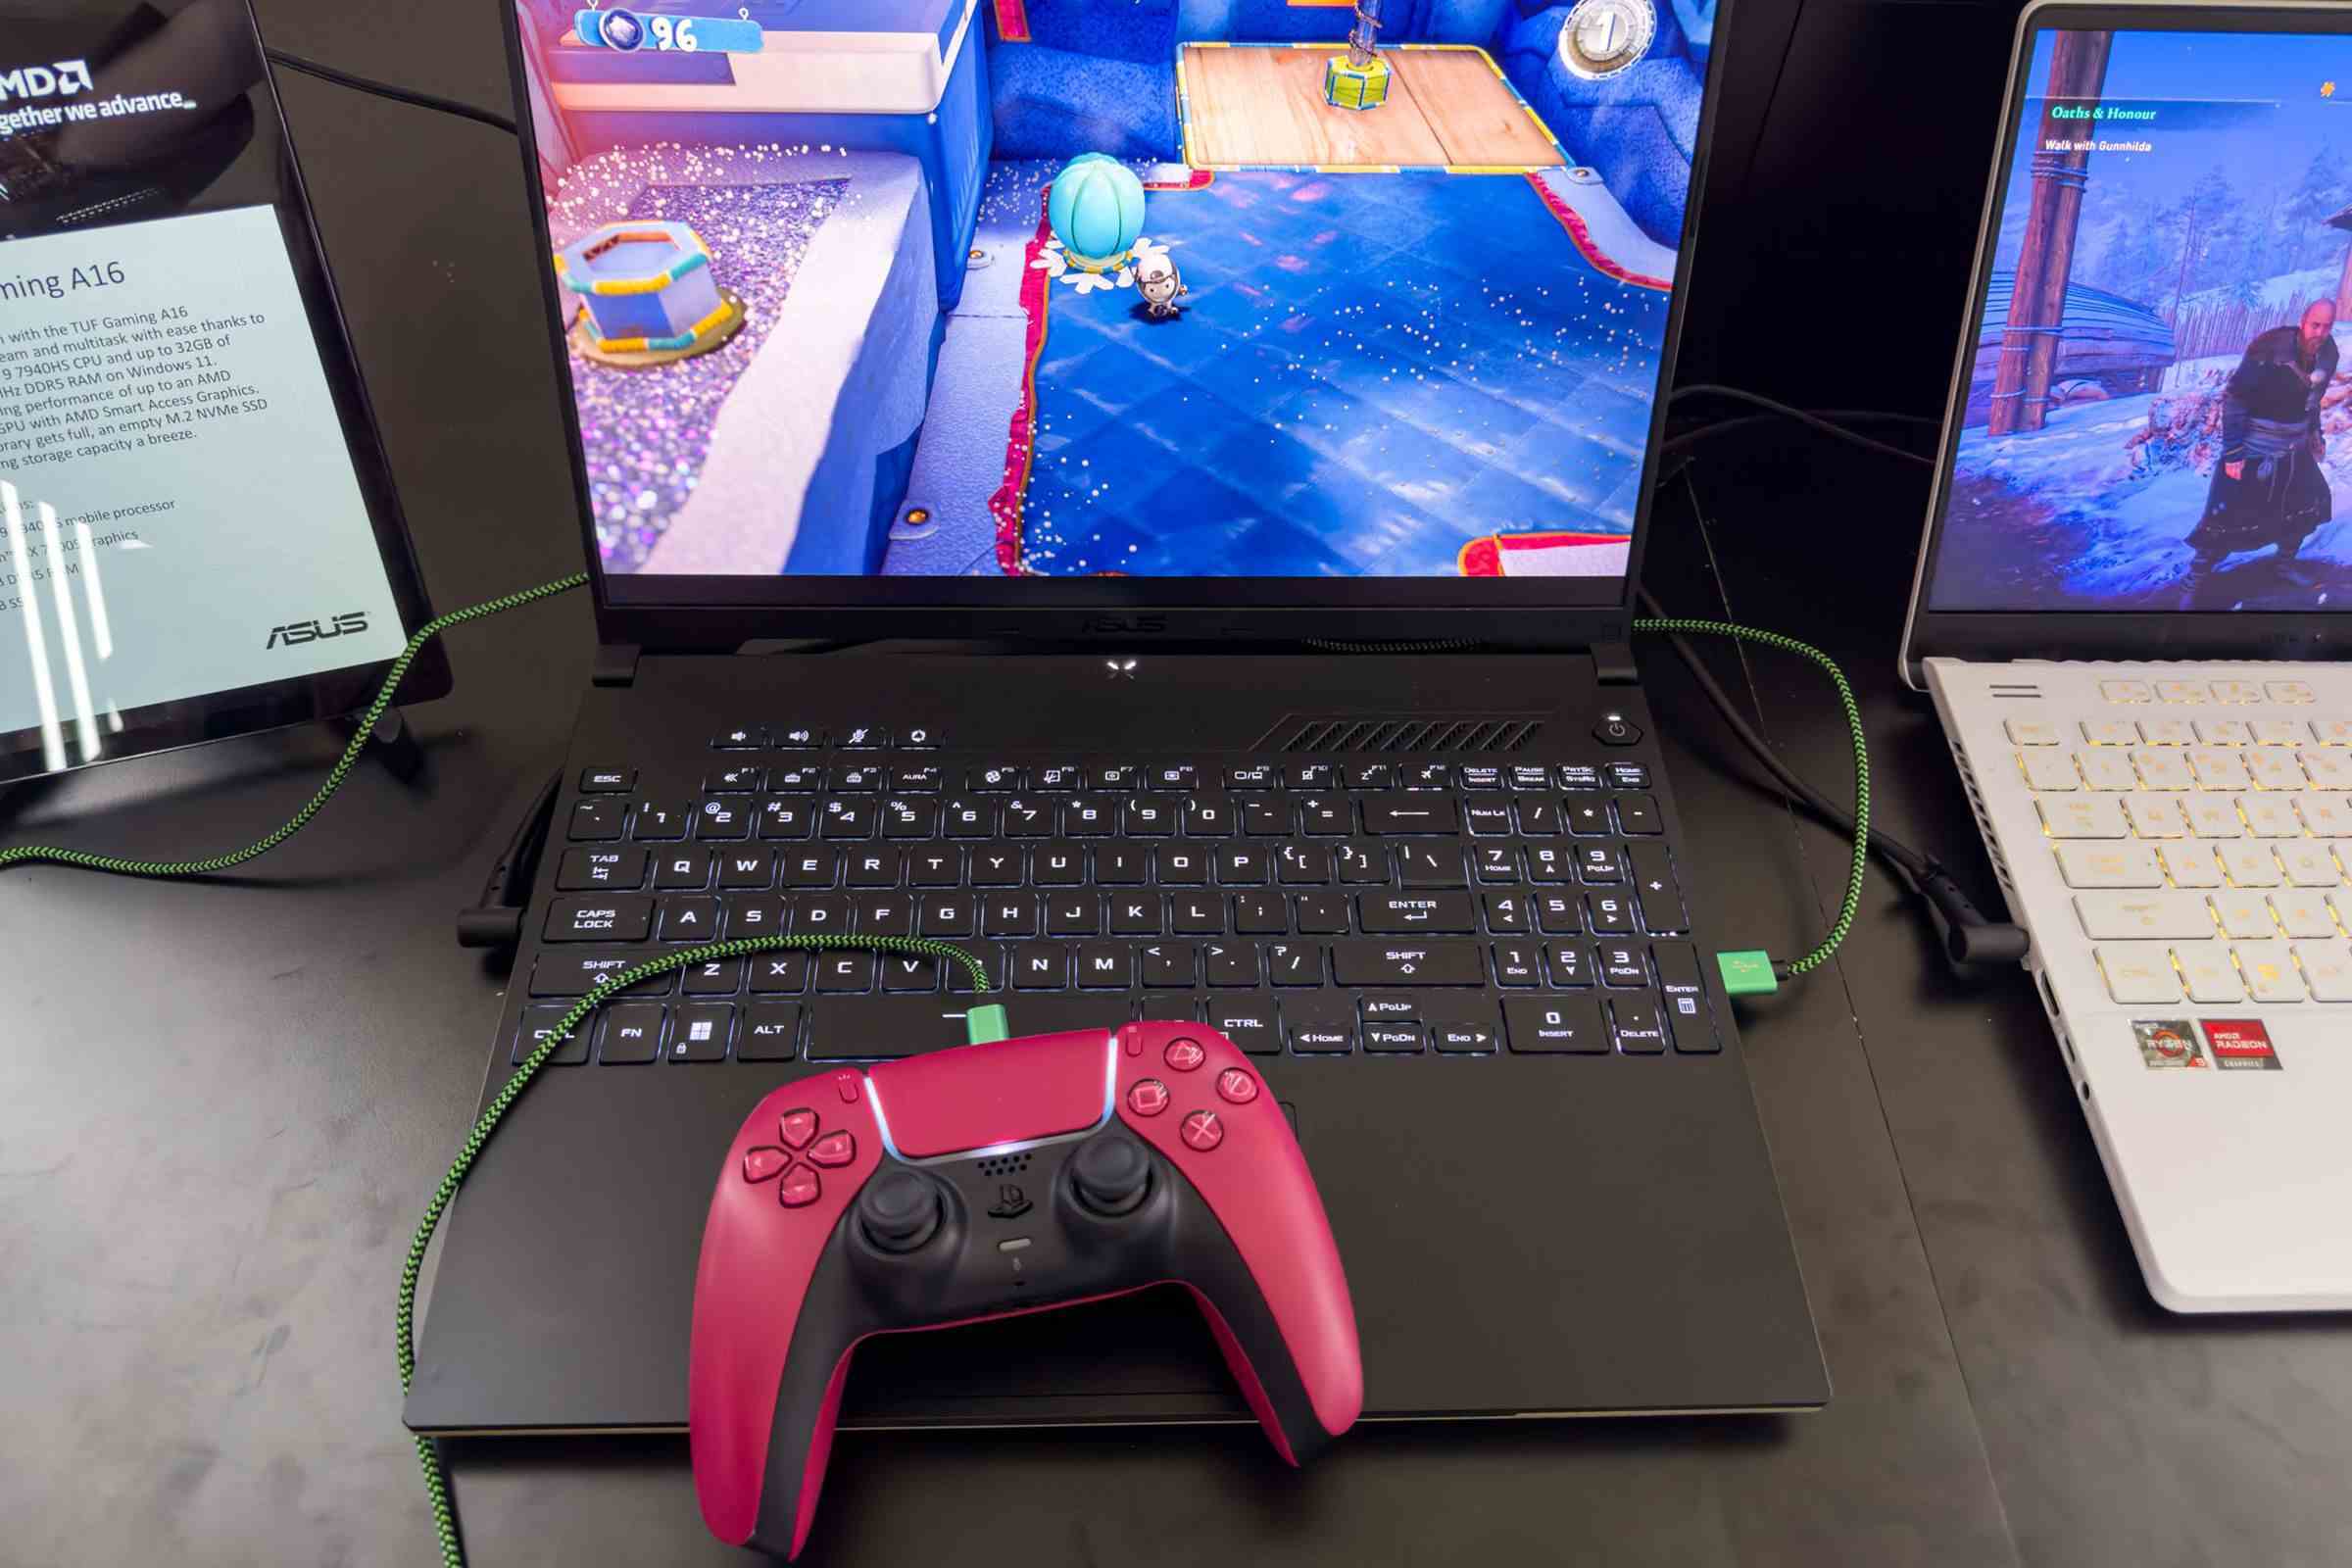 Asus TUF Gaming A16 klavye, dokunmatik yüzey üzerinde duran kırmızı bir PS5 kontrolcüsü ile yukarıdan görülüyor.